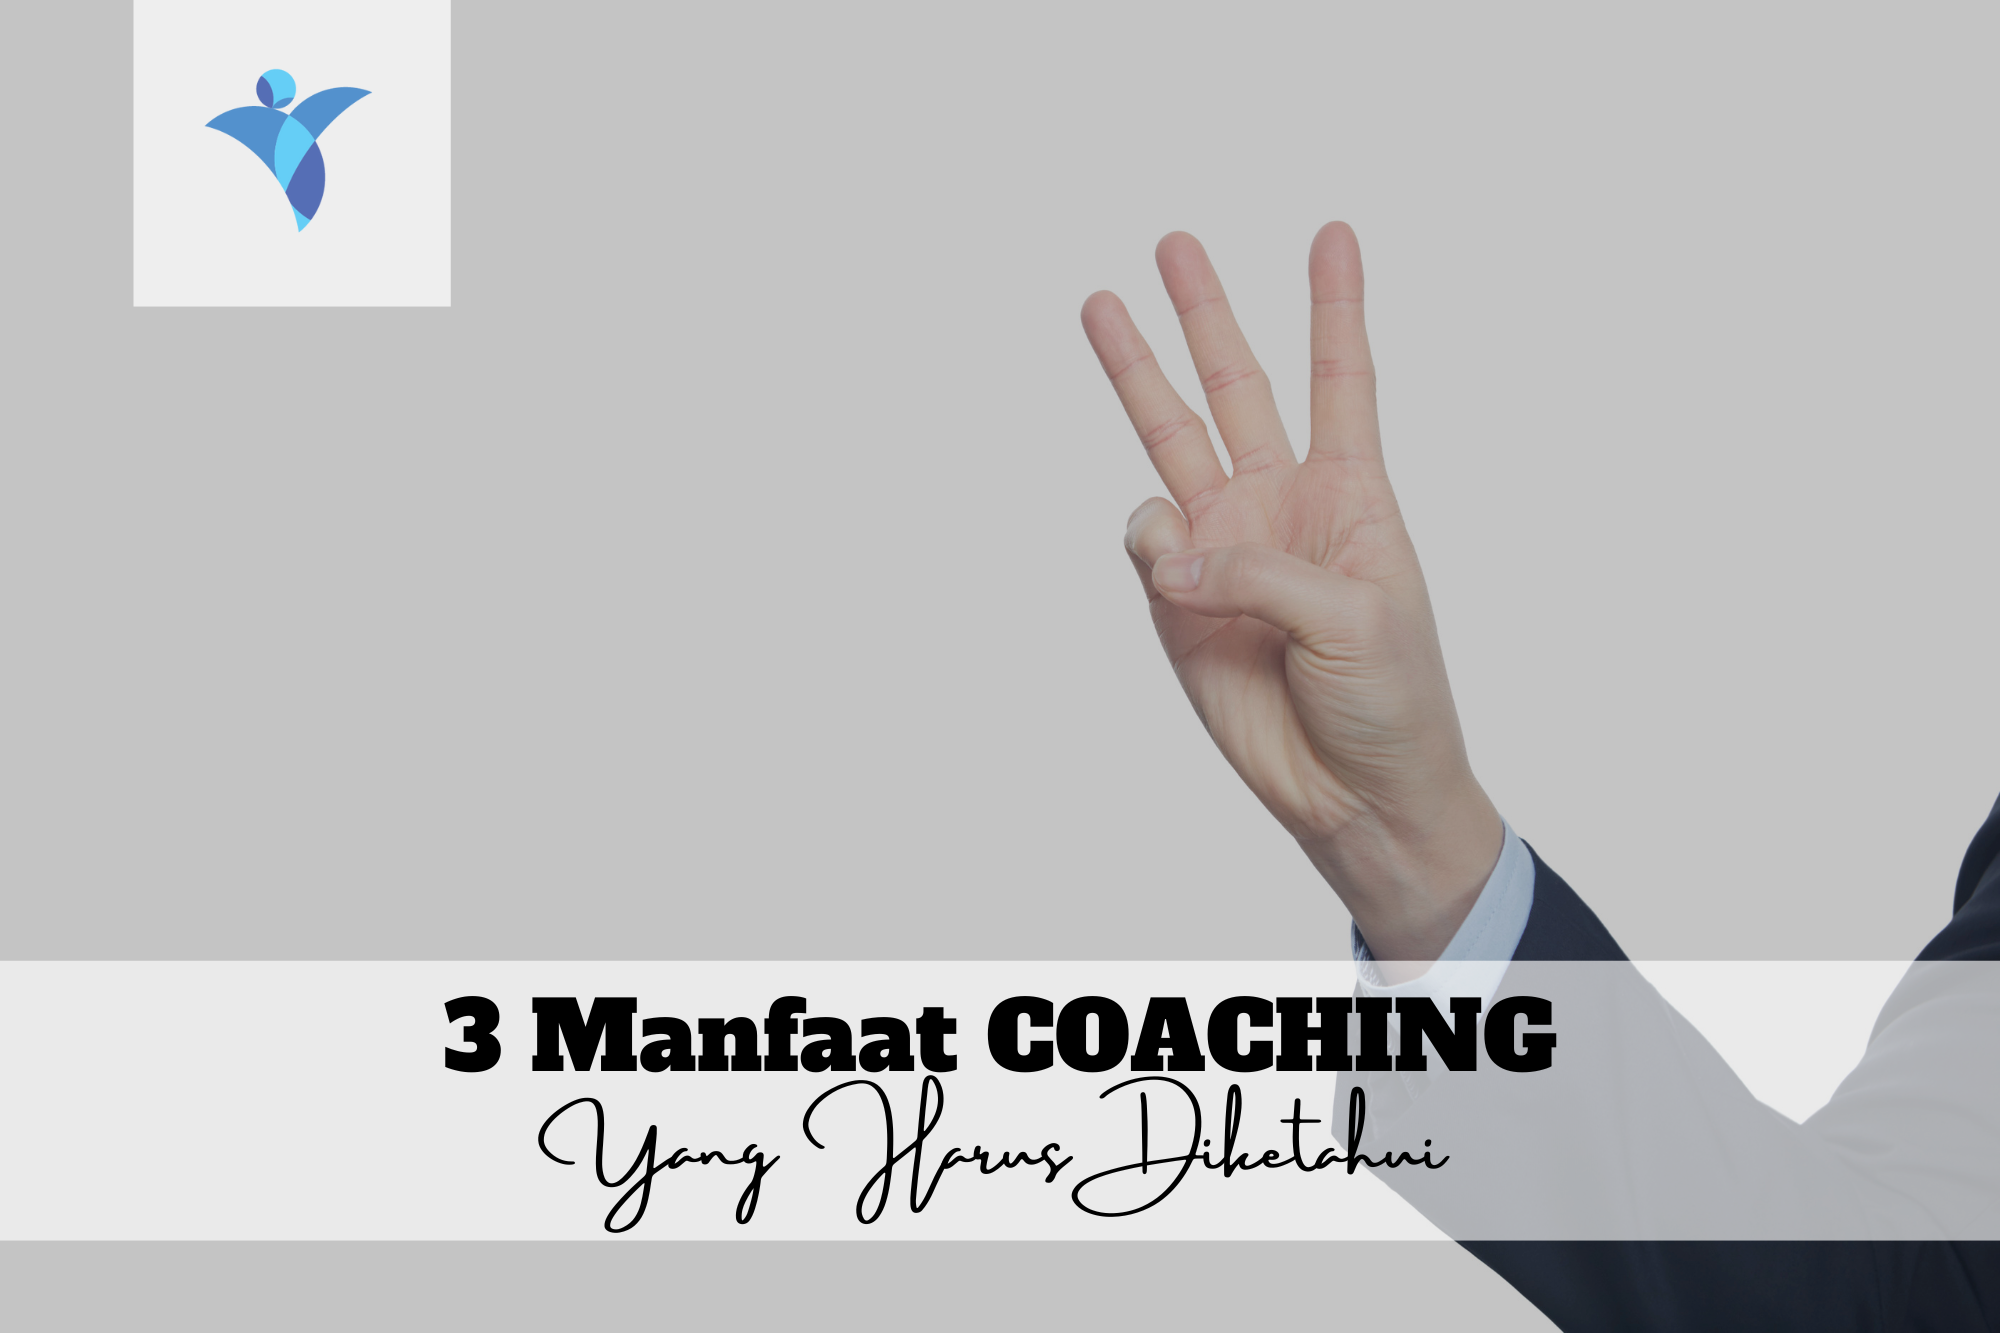 3 Manfaat Coaching yang Harus Diketahui